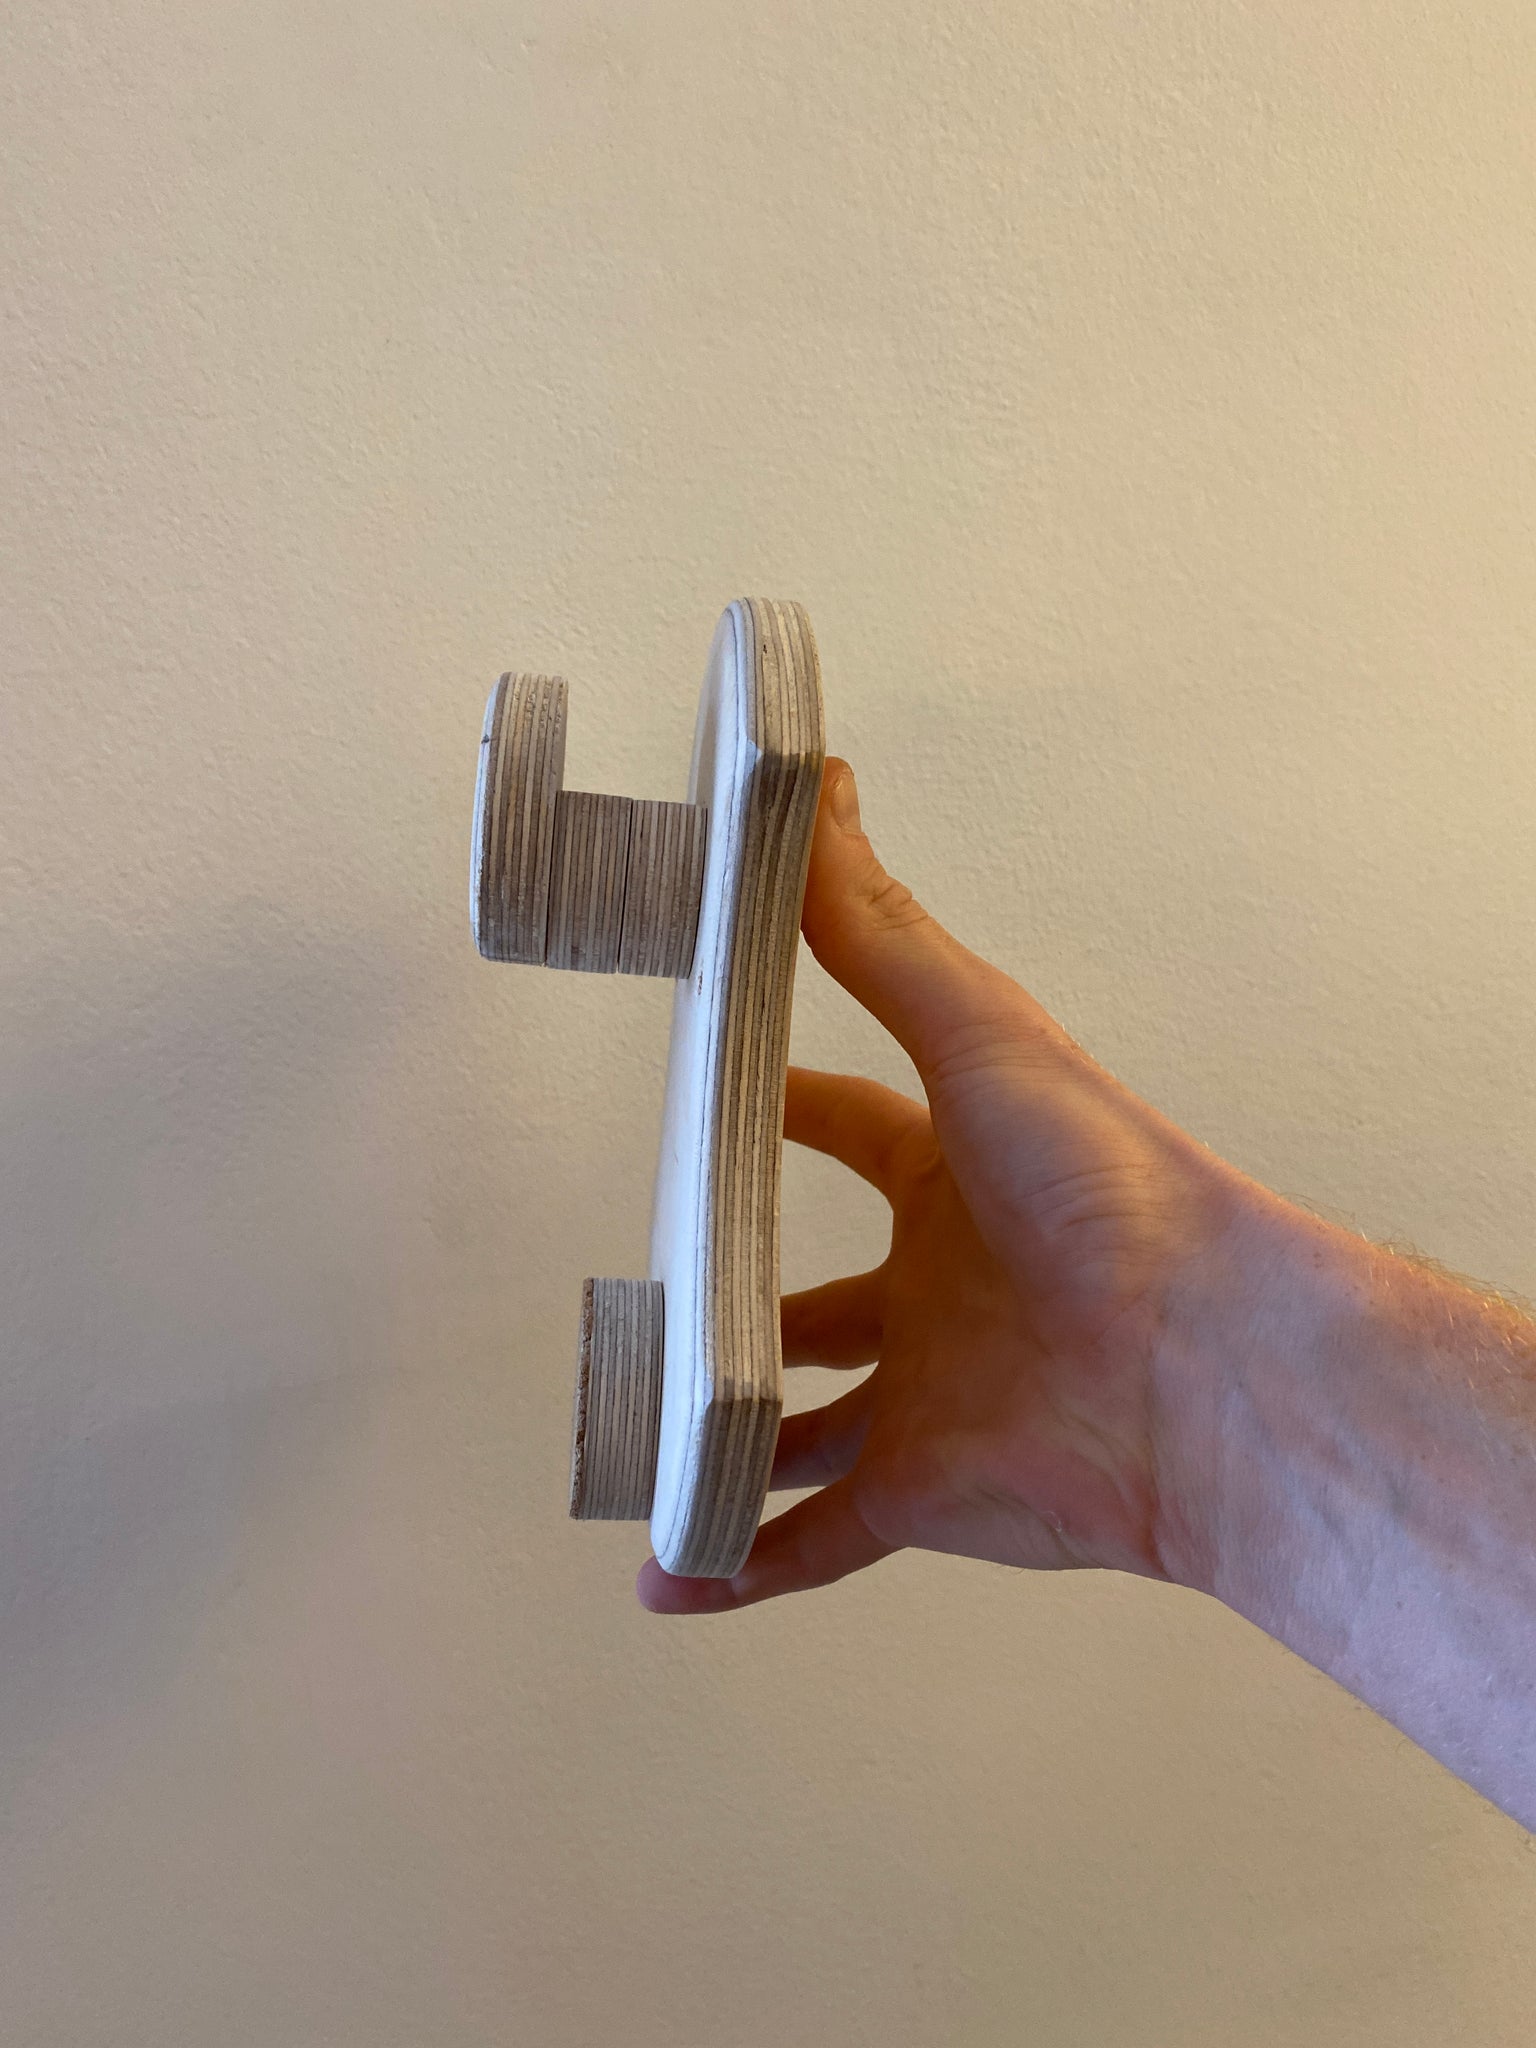 Handpan Wandhalterung ansicht von der Seite. Nicht montiert in der Hand gehalten. zum aufhängen von Handpans an die Wand